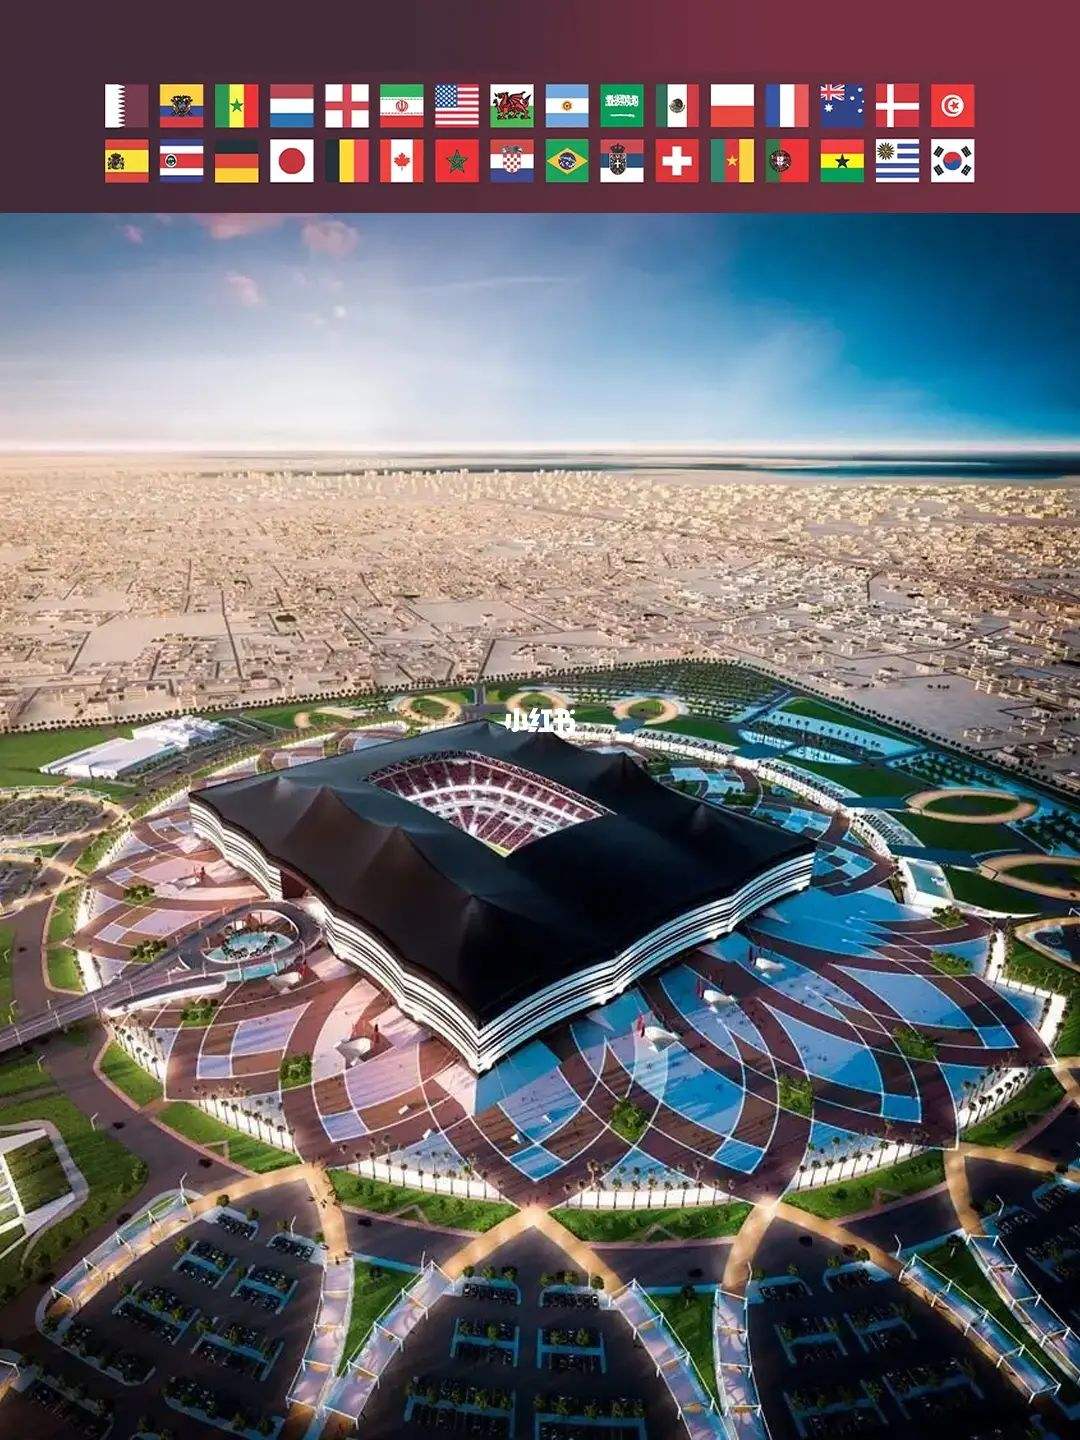 Beda gaya sistem pendinginan stadion Piala Donya Qatar!Ayo goleki!